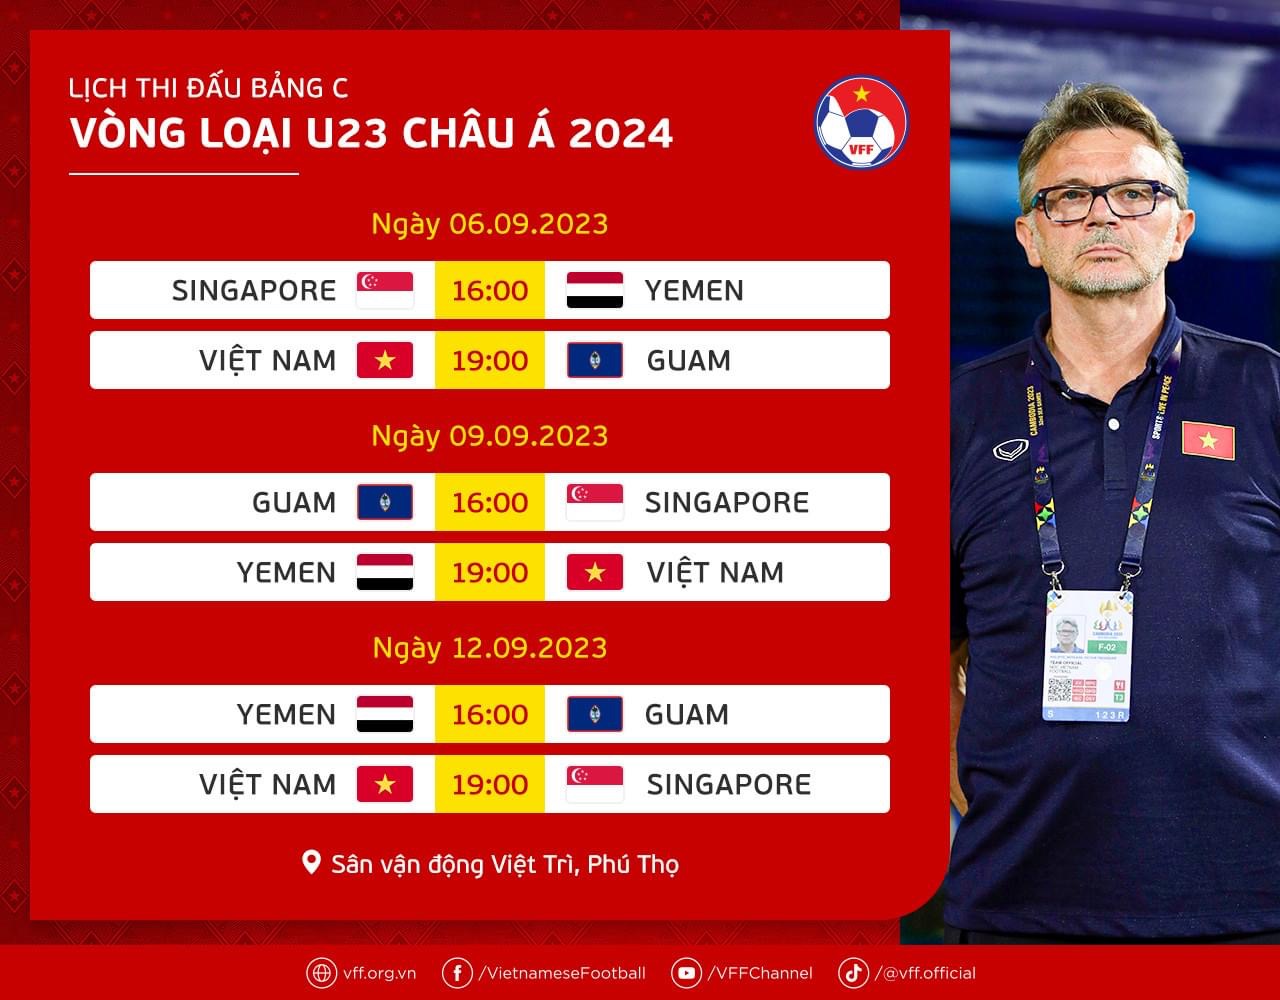 Lịch thi đấu của U23 Việt Nam tại vòng loại U23 châu Á 2023. Ảnh: VFF